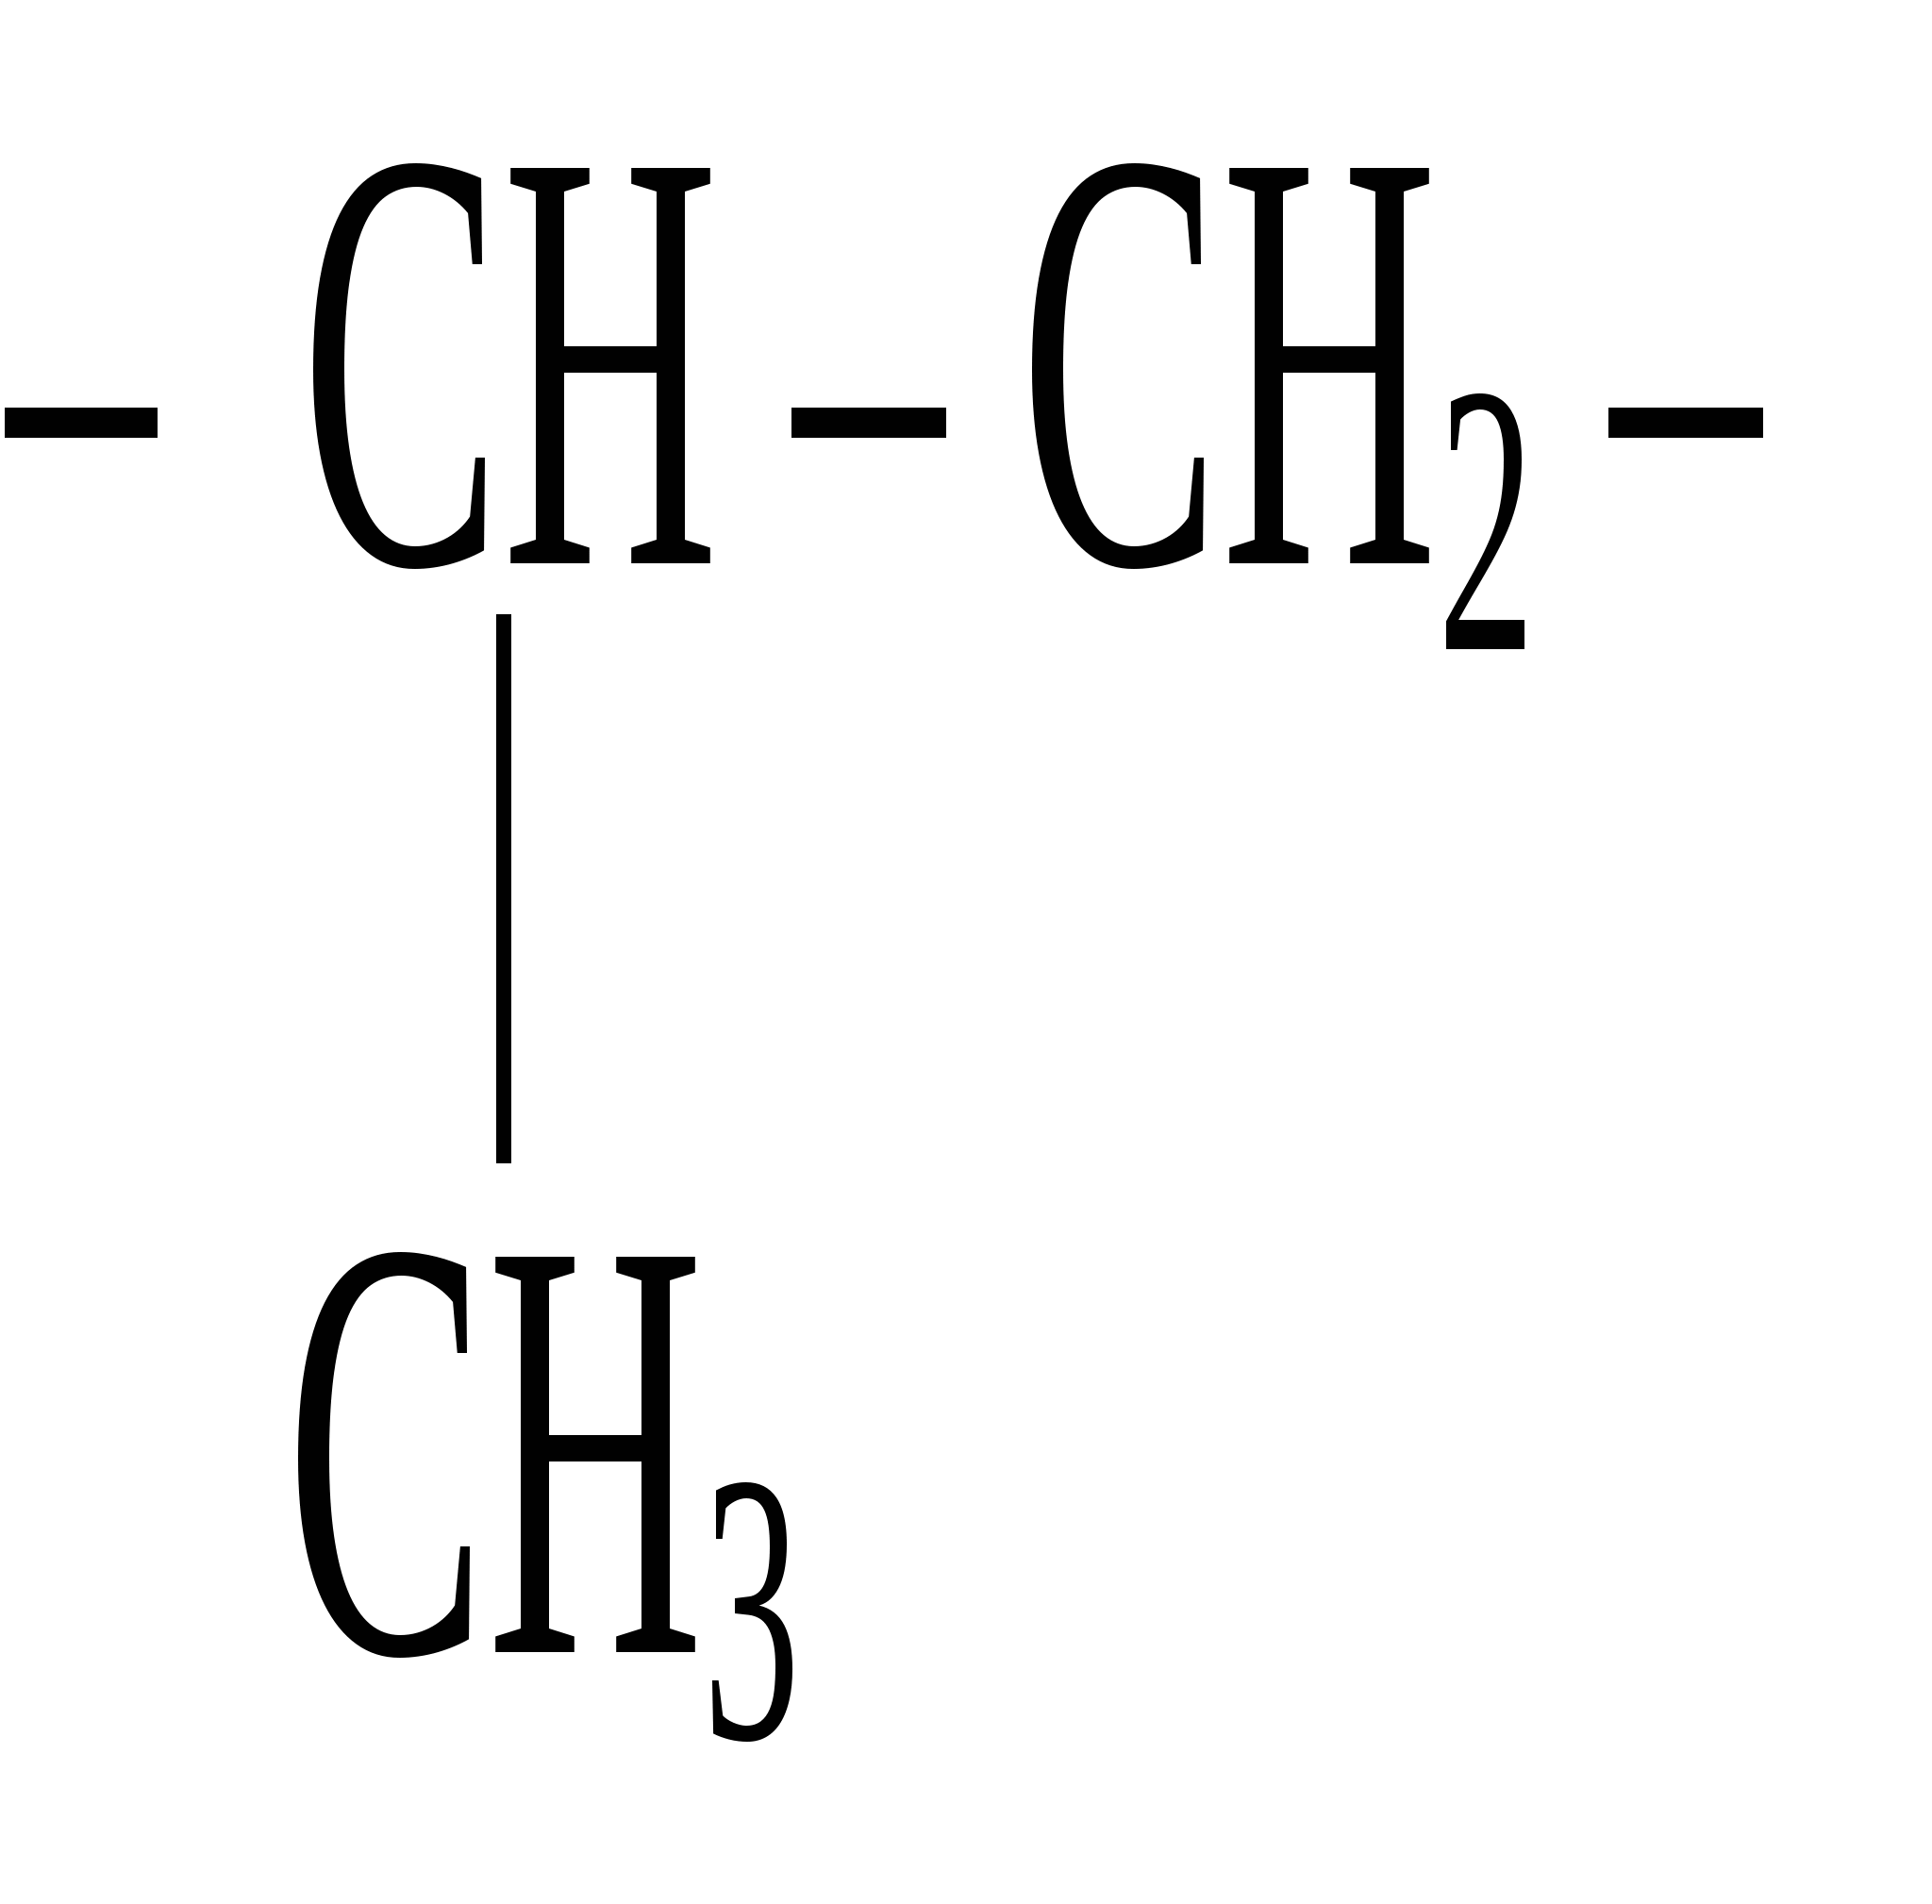 Метан 2 метилпропан